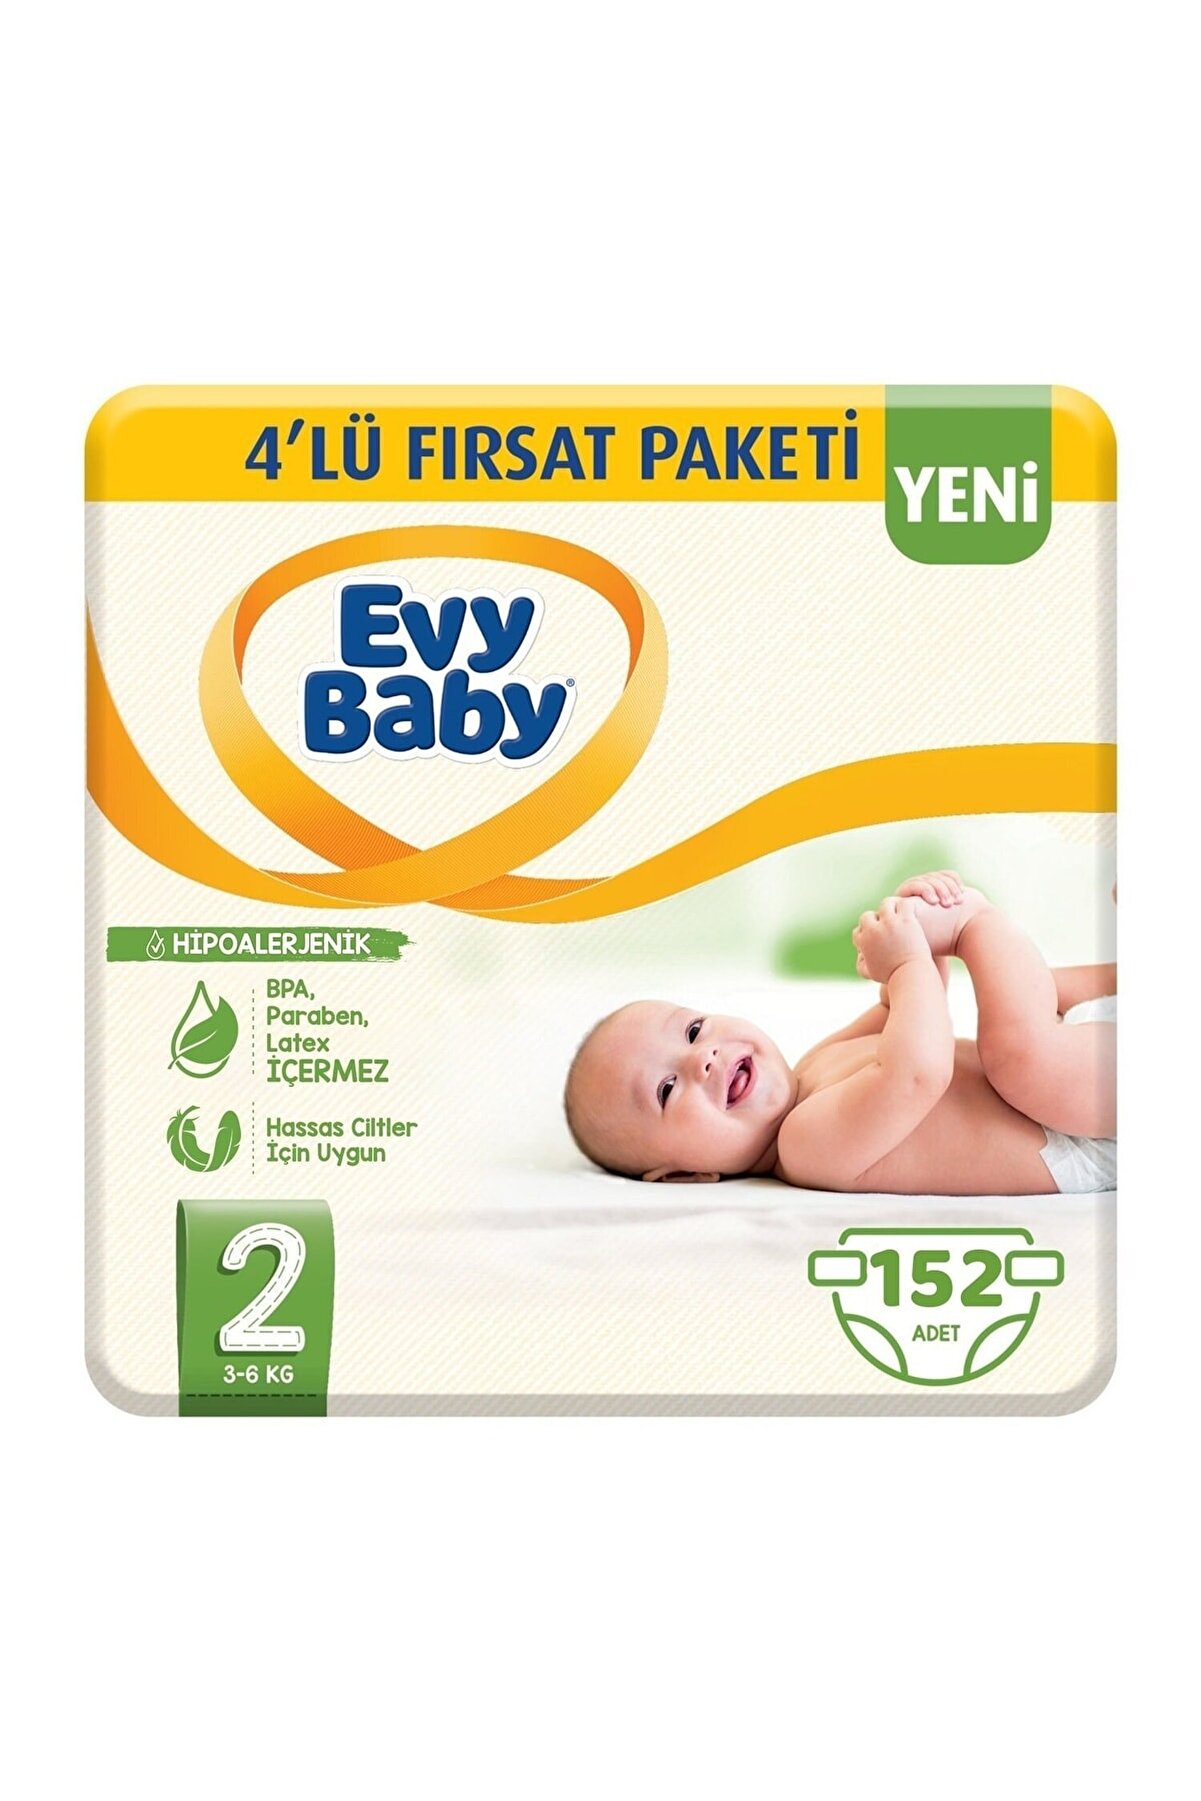 Evy Baby Bebek Bezi 2 Beden Mini 4'lü Fırsat Paketi 152 Adet (YENİ)